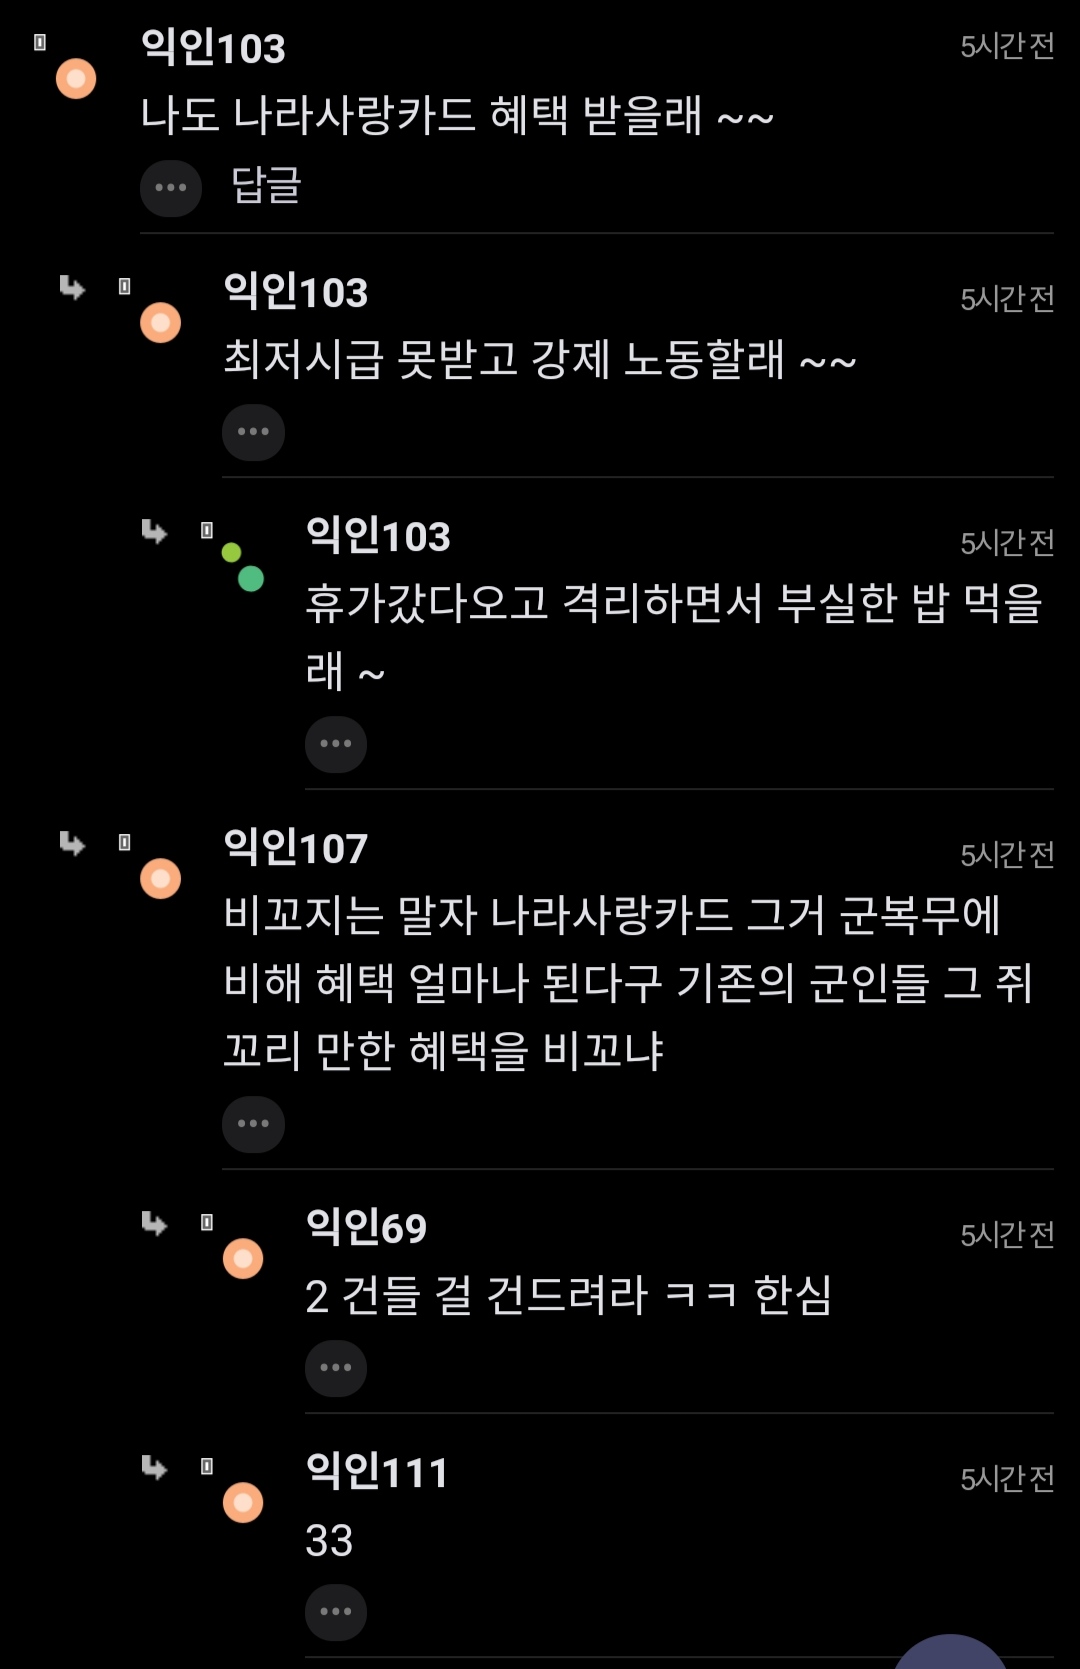 ""여성징병 청원 20만명 넘었대... 진짜 가는거야?"".jpg